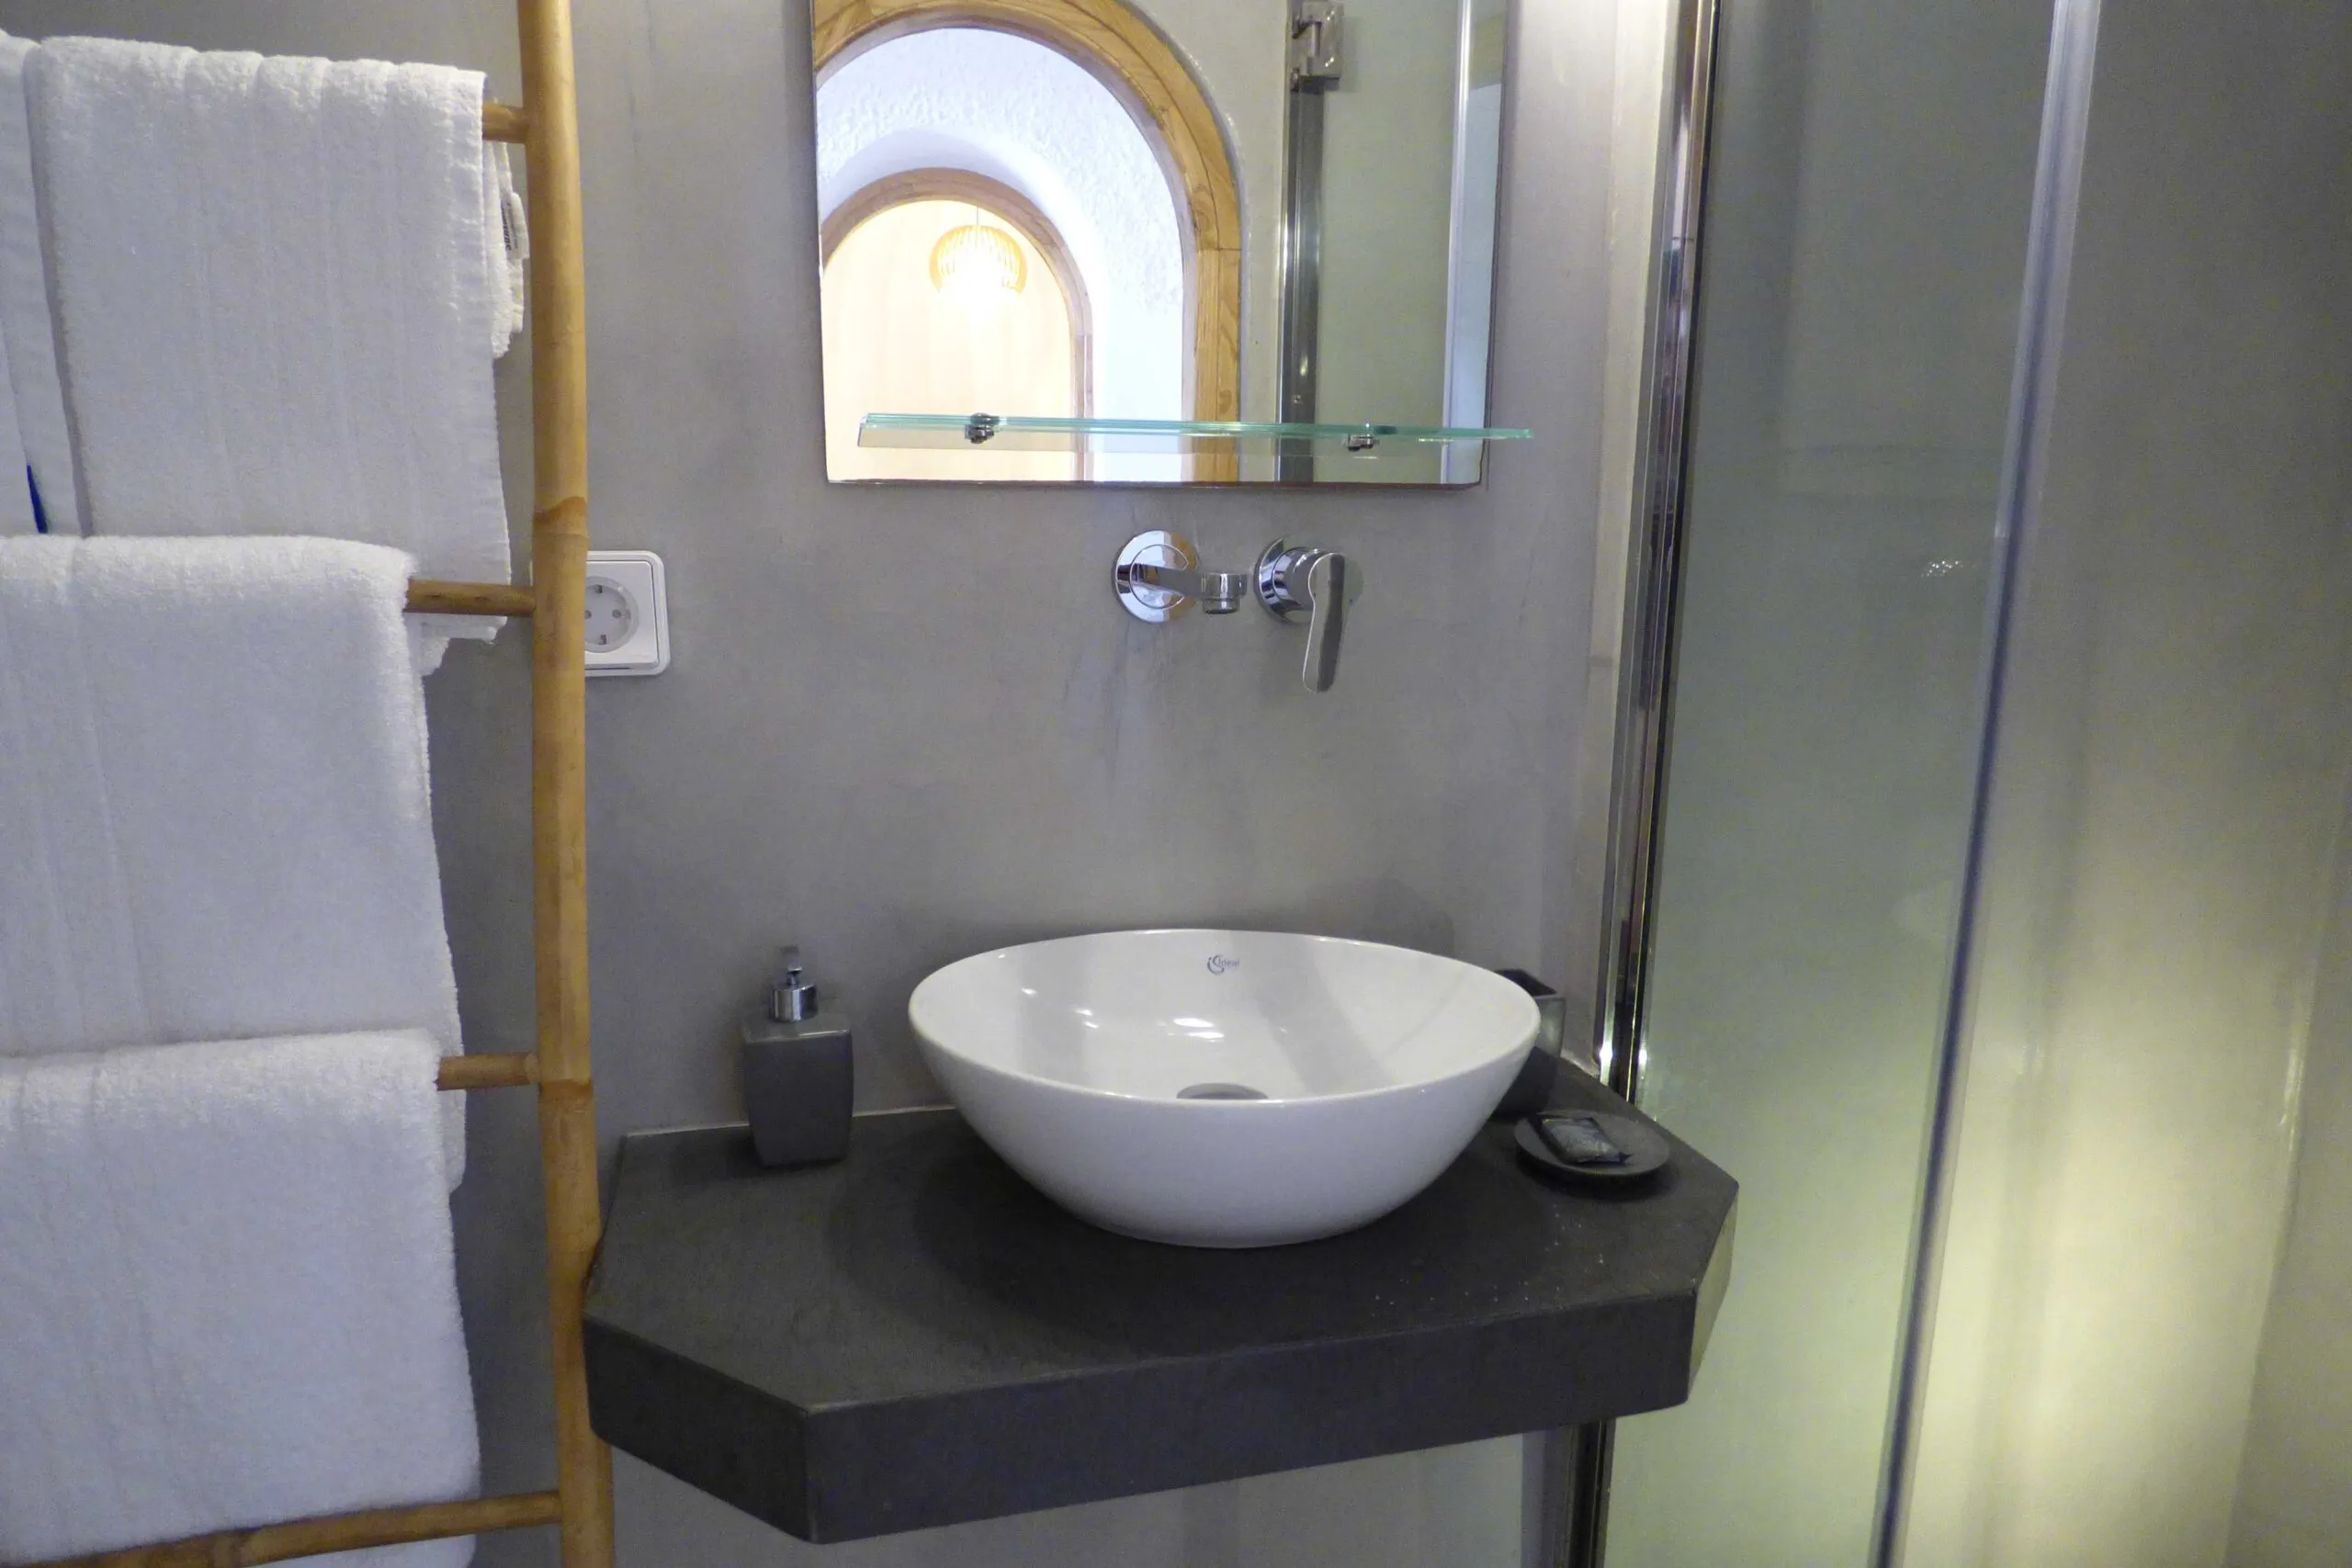 Two Bedroom Villa Lukas bathroom amenities